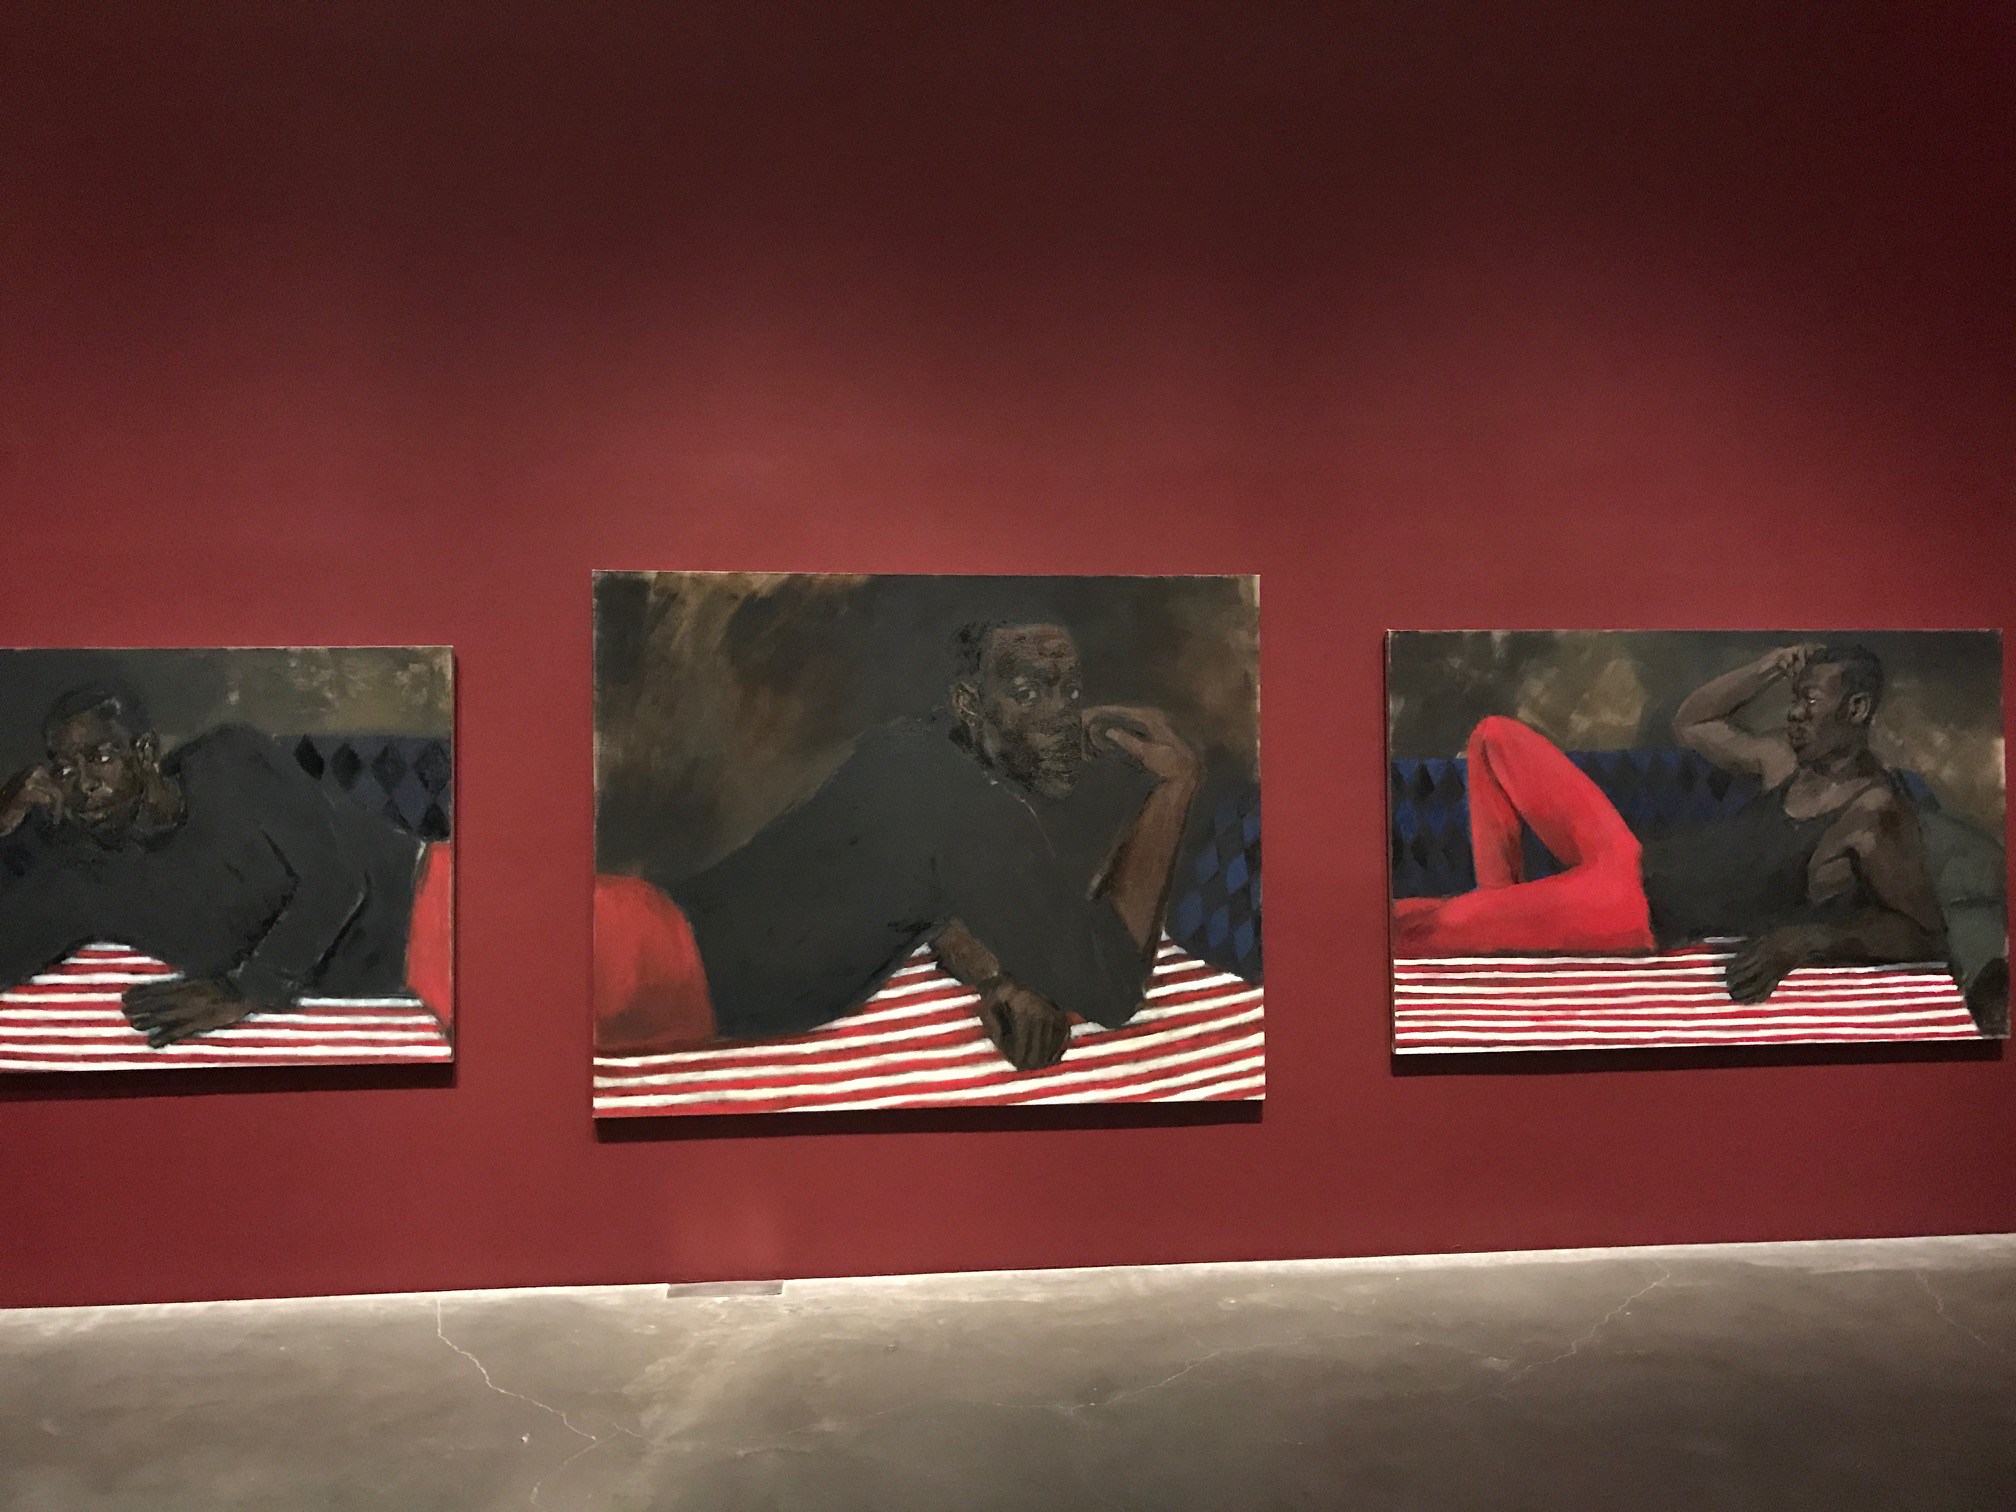 Выставка в Новом музее современного искусства в Нью-Йорке (2017). Линетт Ядом-Боакье (иногда Линетт Йиадом-Бокай, Lynette Yiadom-Boakye) - современная британская художница